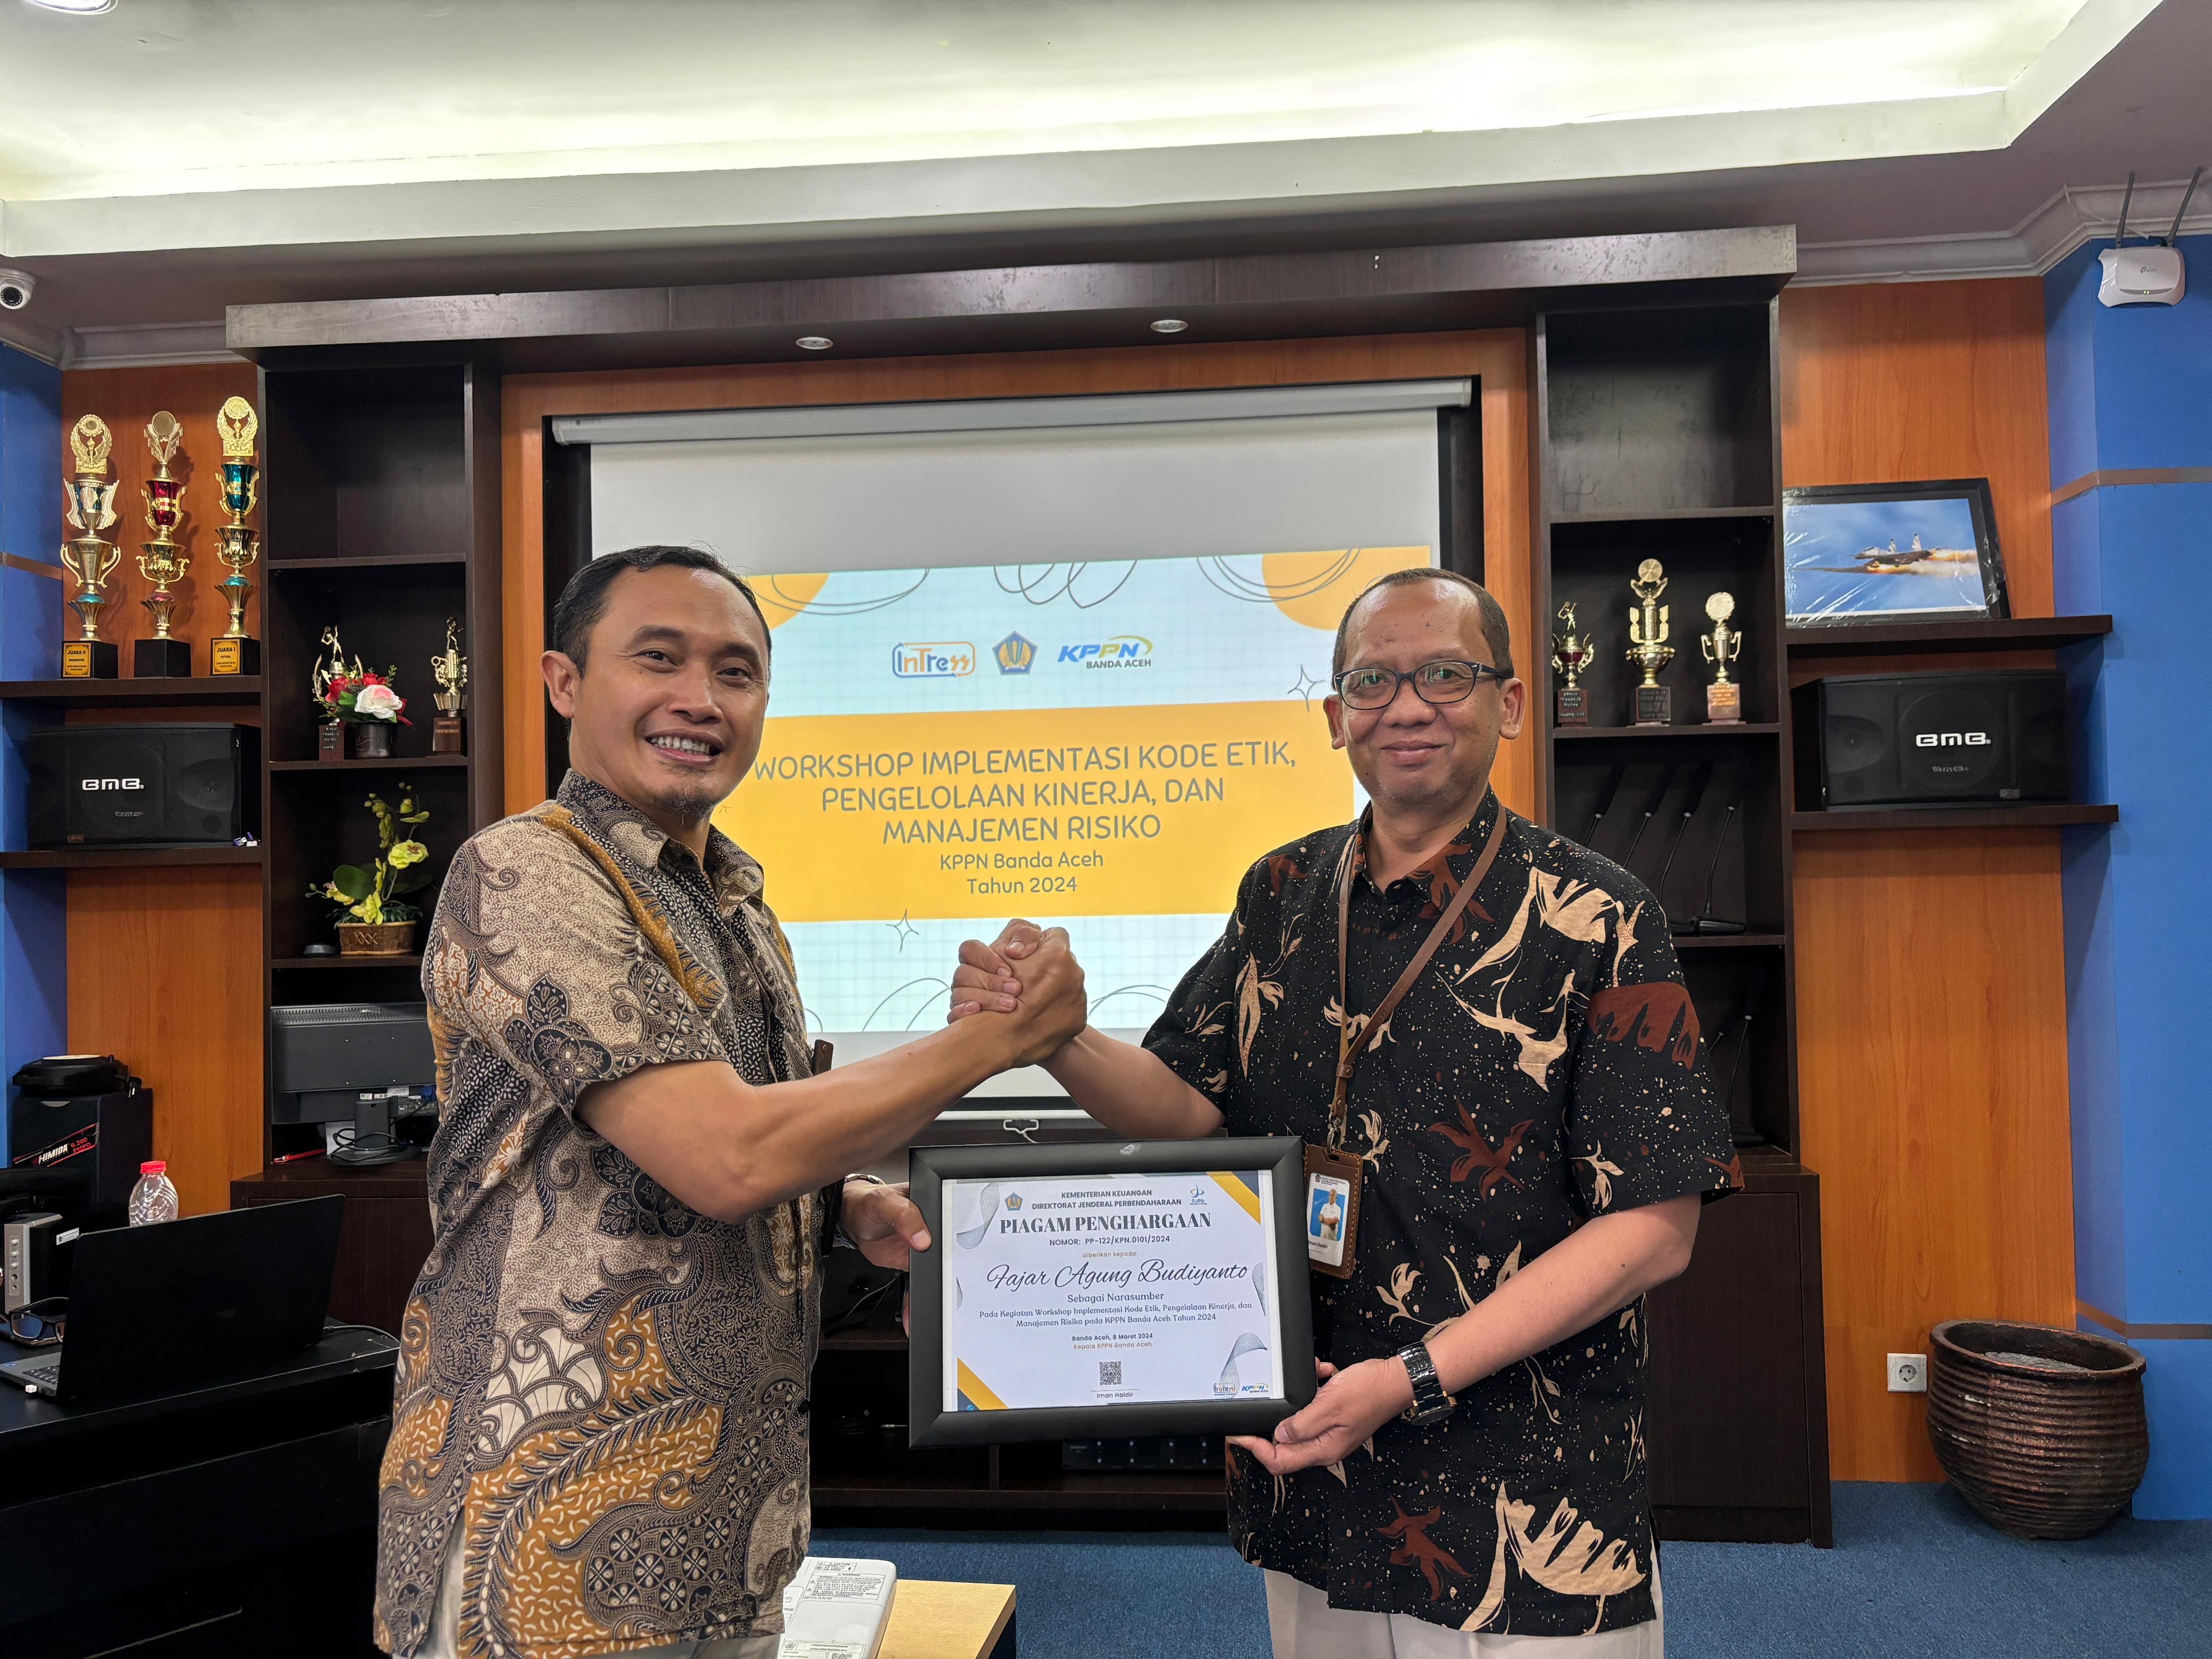 Workshop Implementasi Kode Etik dan Kode Perilaku, Pengelolaan Kinerja, dan Manajemen Risiko di lingkungan Kementerian Keuangan Aceh